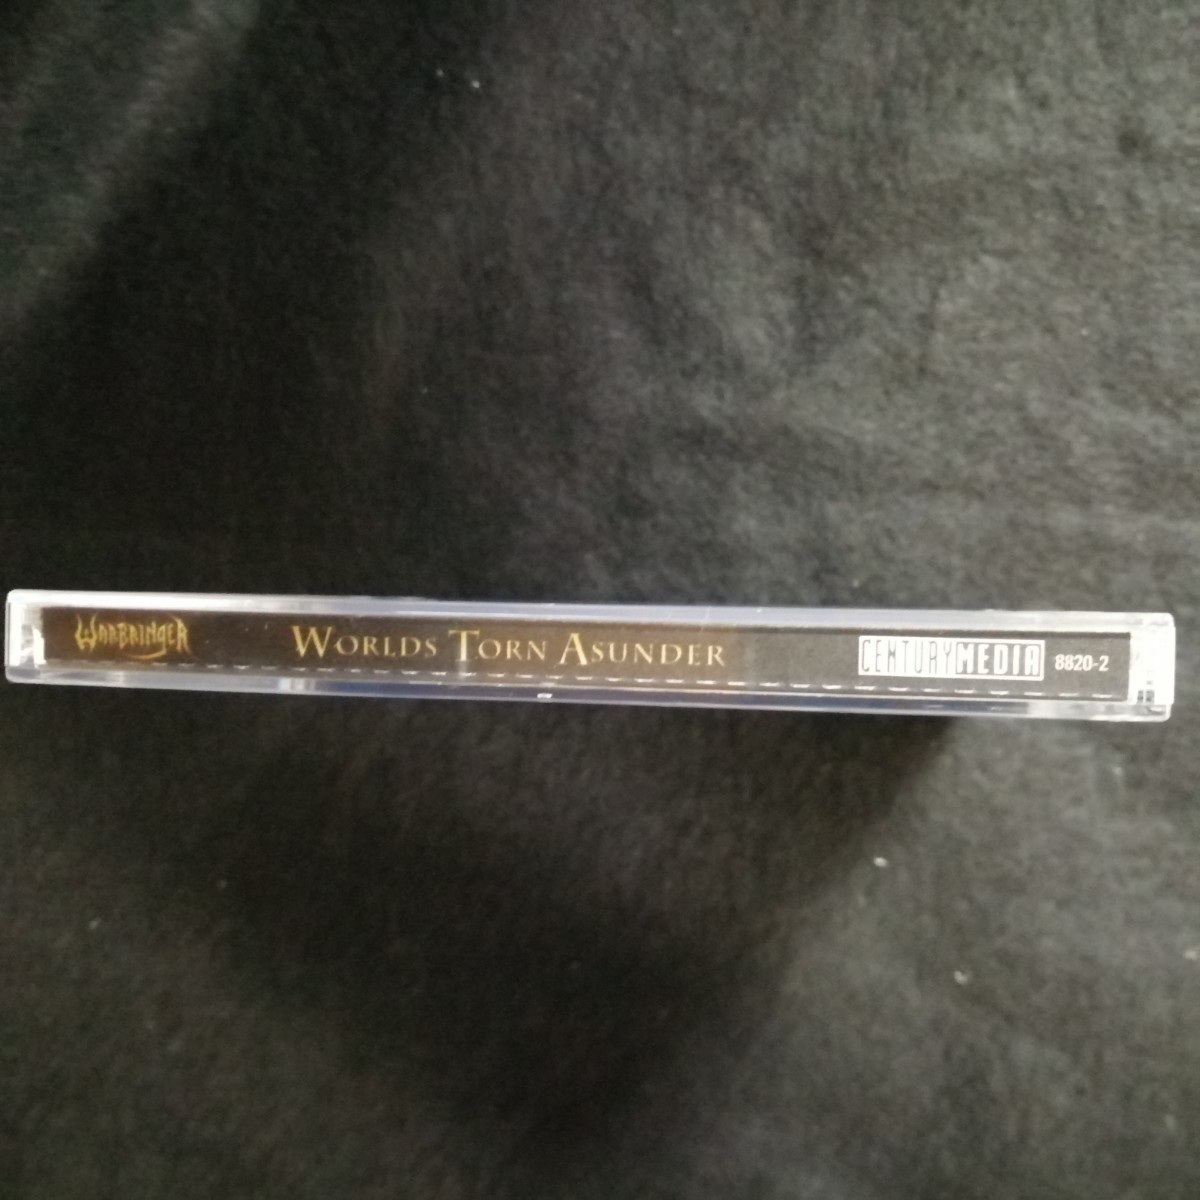 C10　中古CD　ウォーブリンガー　WARBRINGER worlds tone asunder US盤　2011年　8820-2 スラッシュメタル_画像7